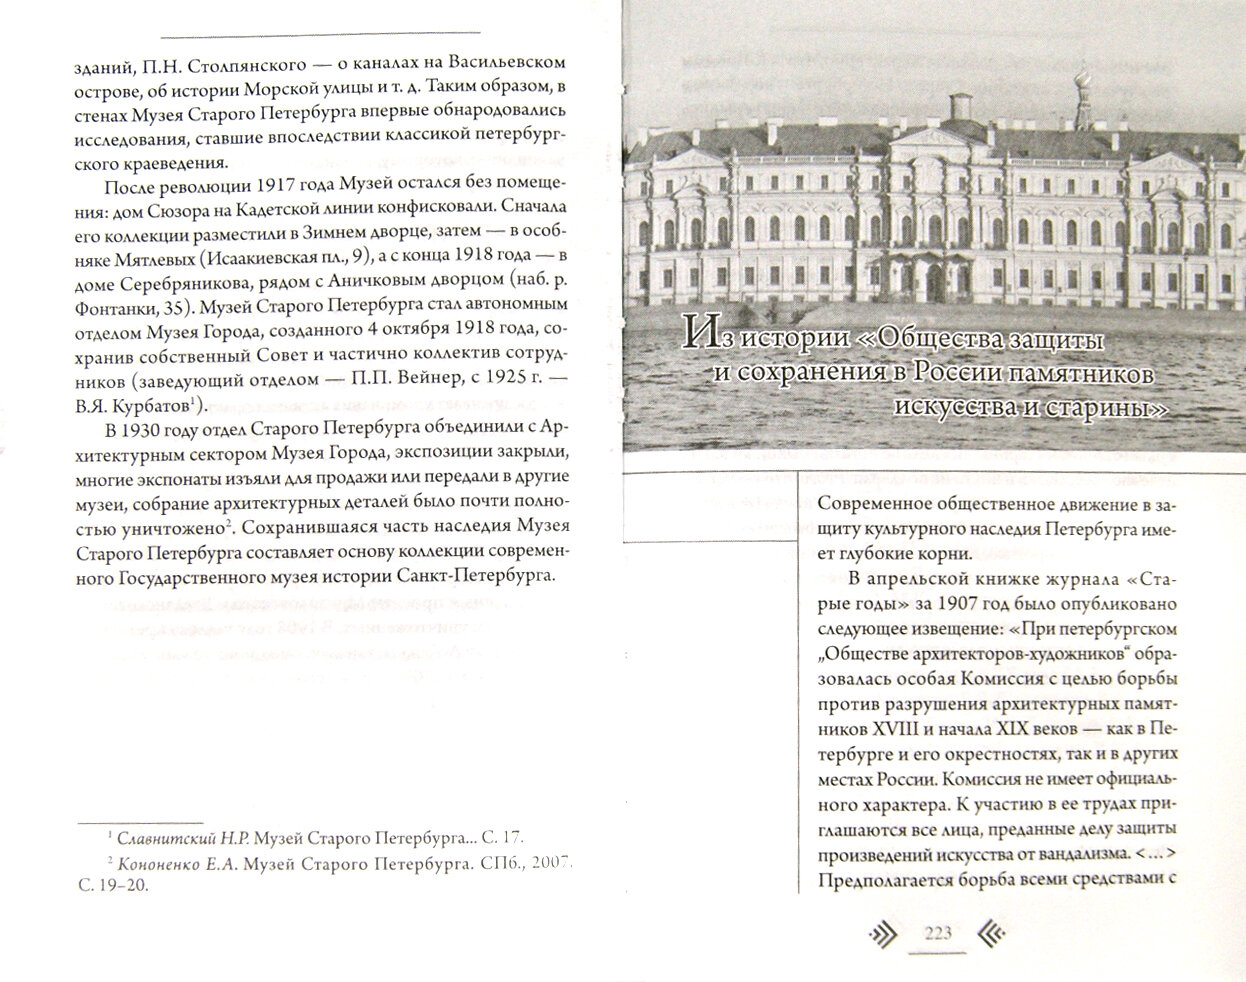 Петербург: история и современность. Избранные очерки - фото №2